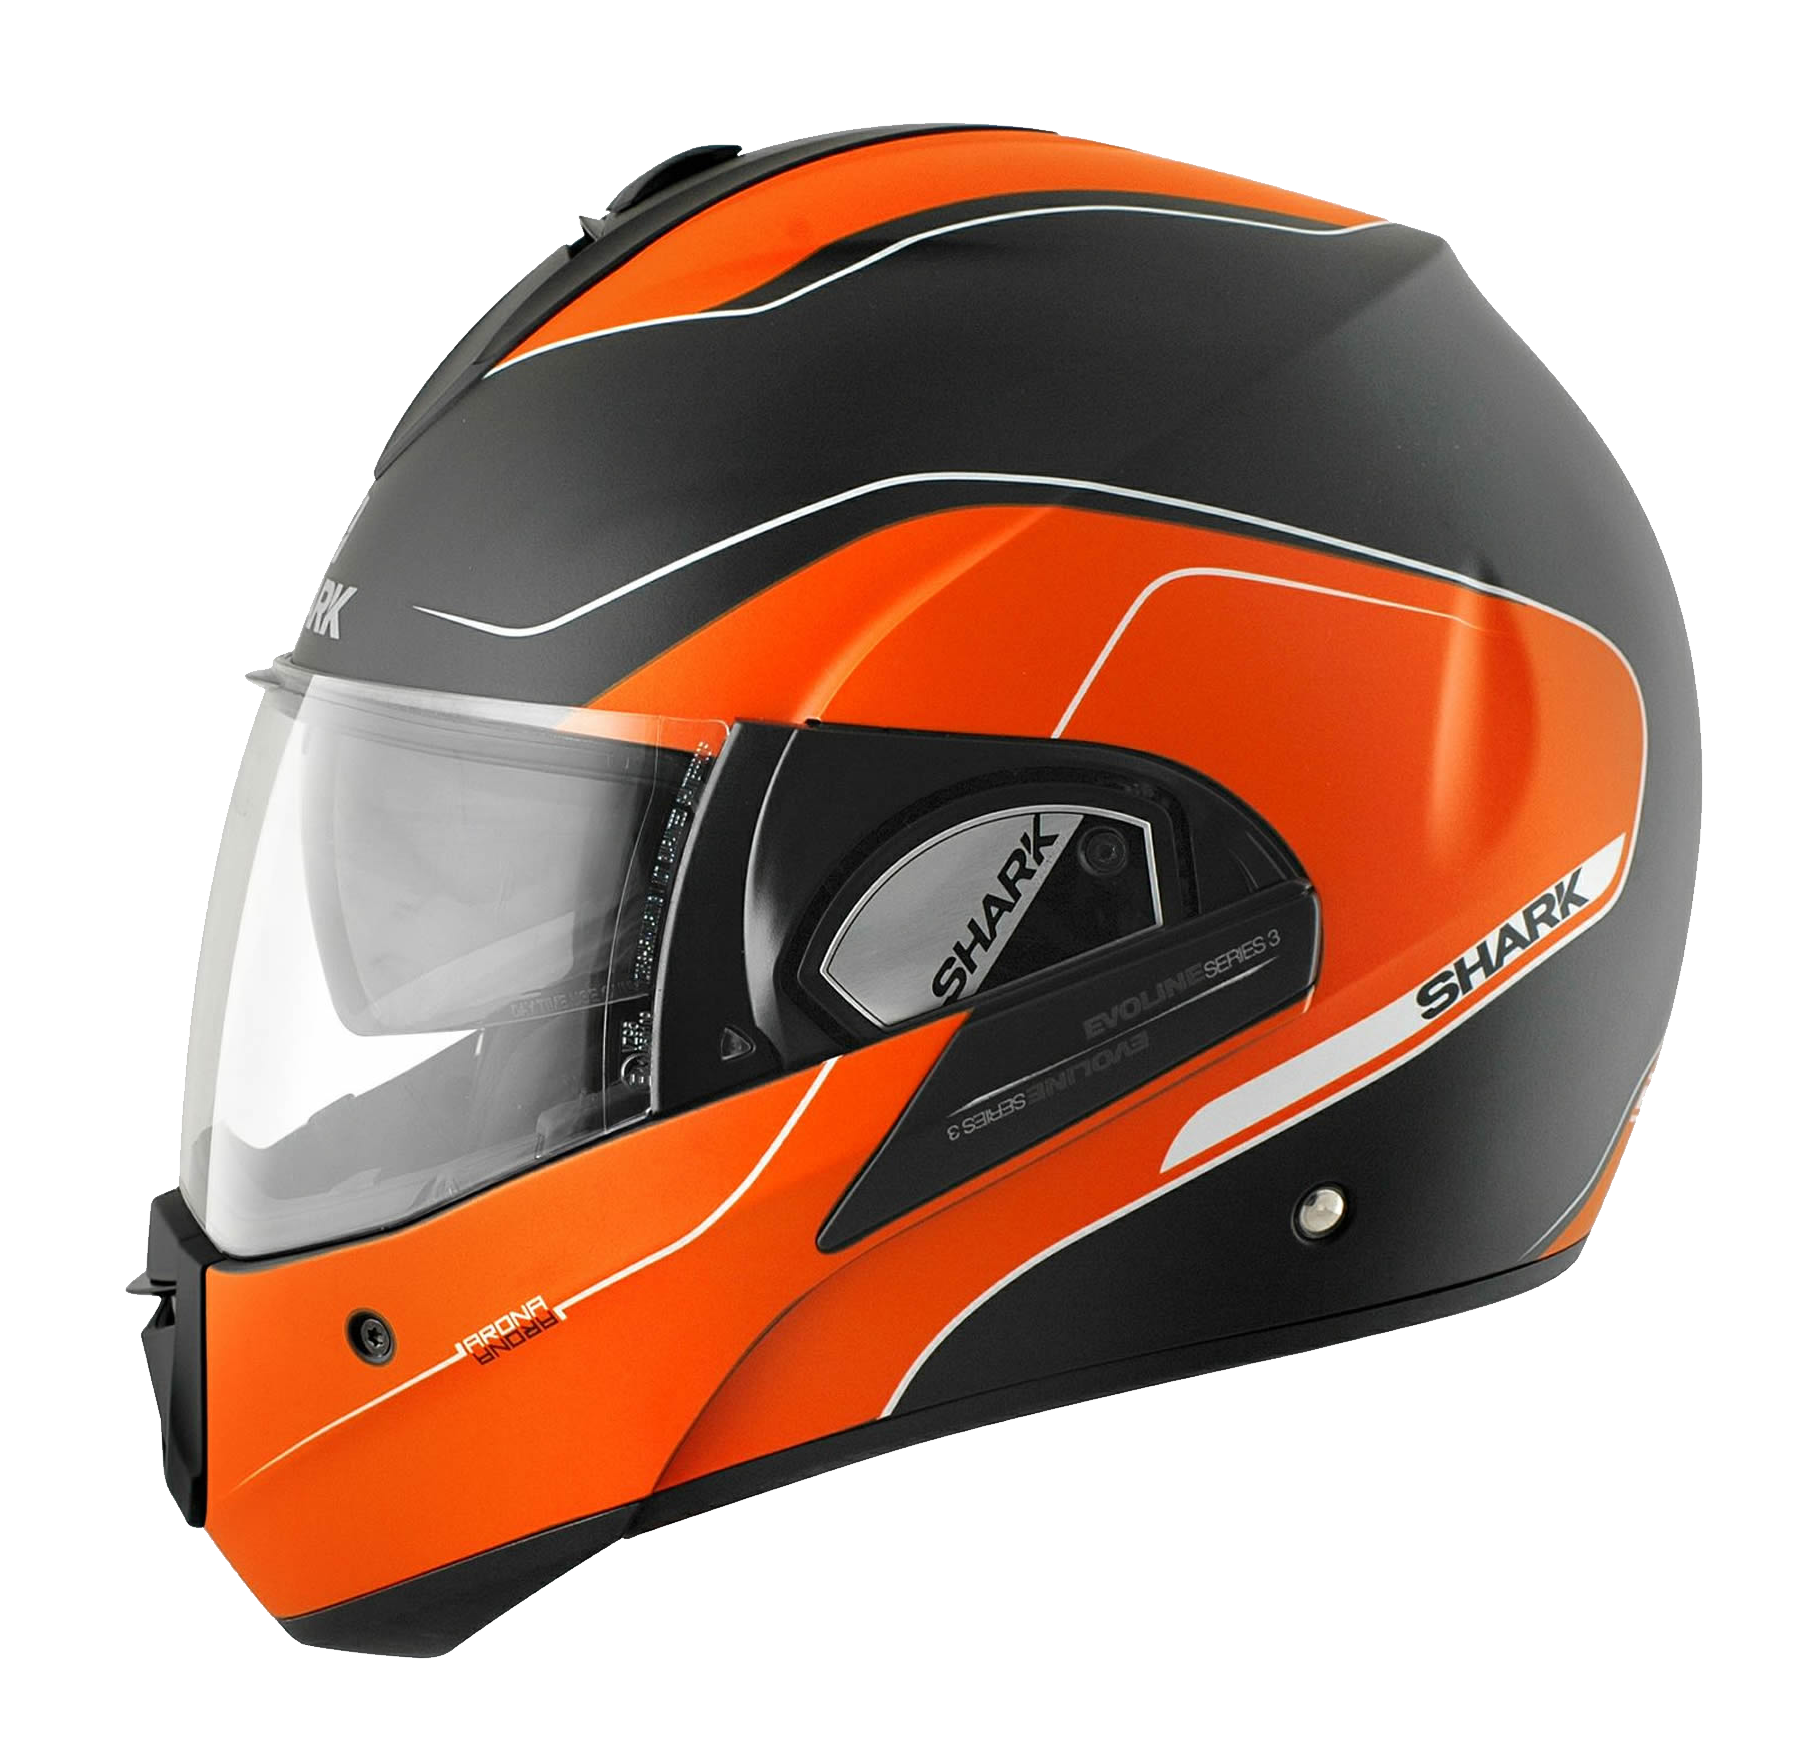 Orange and Black Motorcycle Helmet PNG HQ - Motorcycle Helmet Png